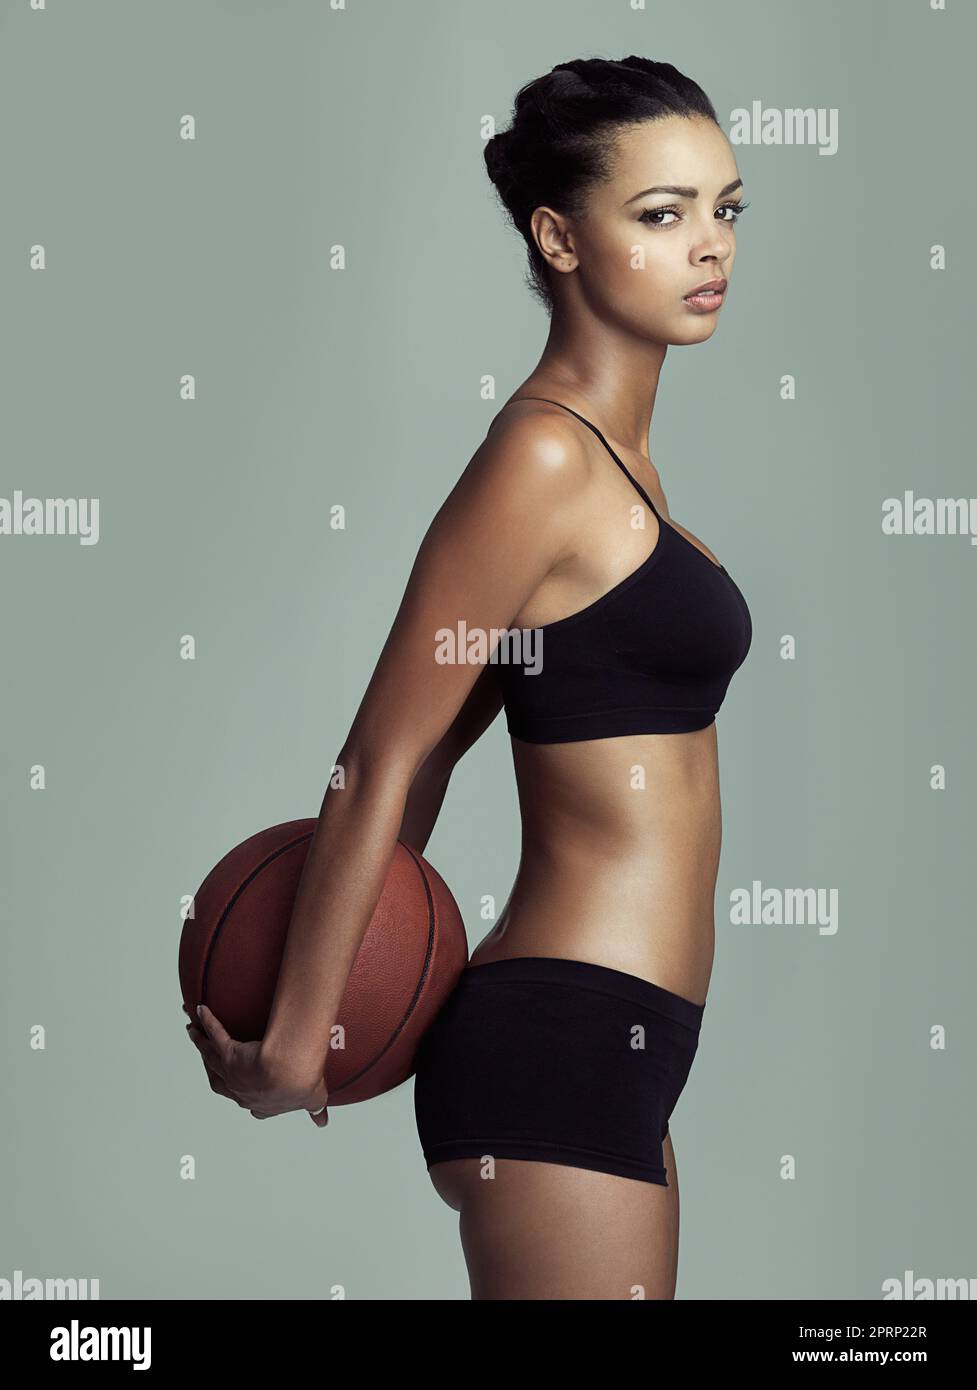 Gesund und fit bleiben der Ball liegt auf deinem Platz. Studio-Aufnahme eines jungen Basketballspielers vor grauem Hintergrund. Stockfoto